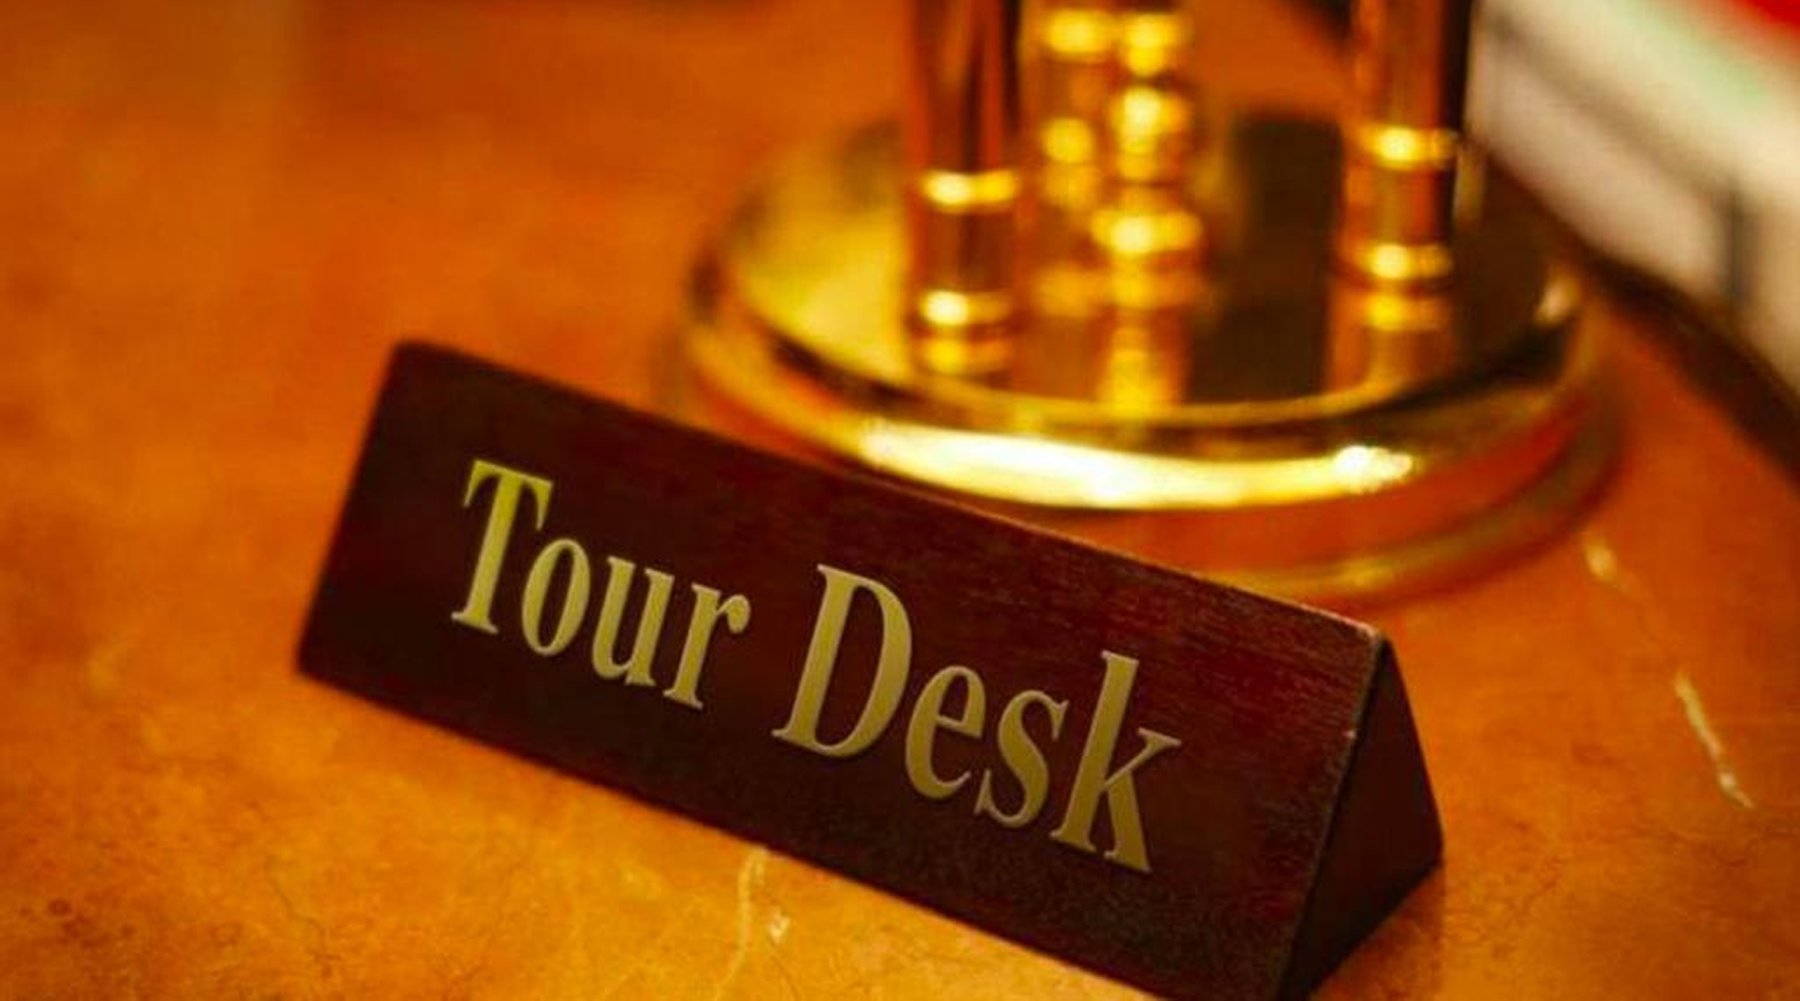 tour desk information